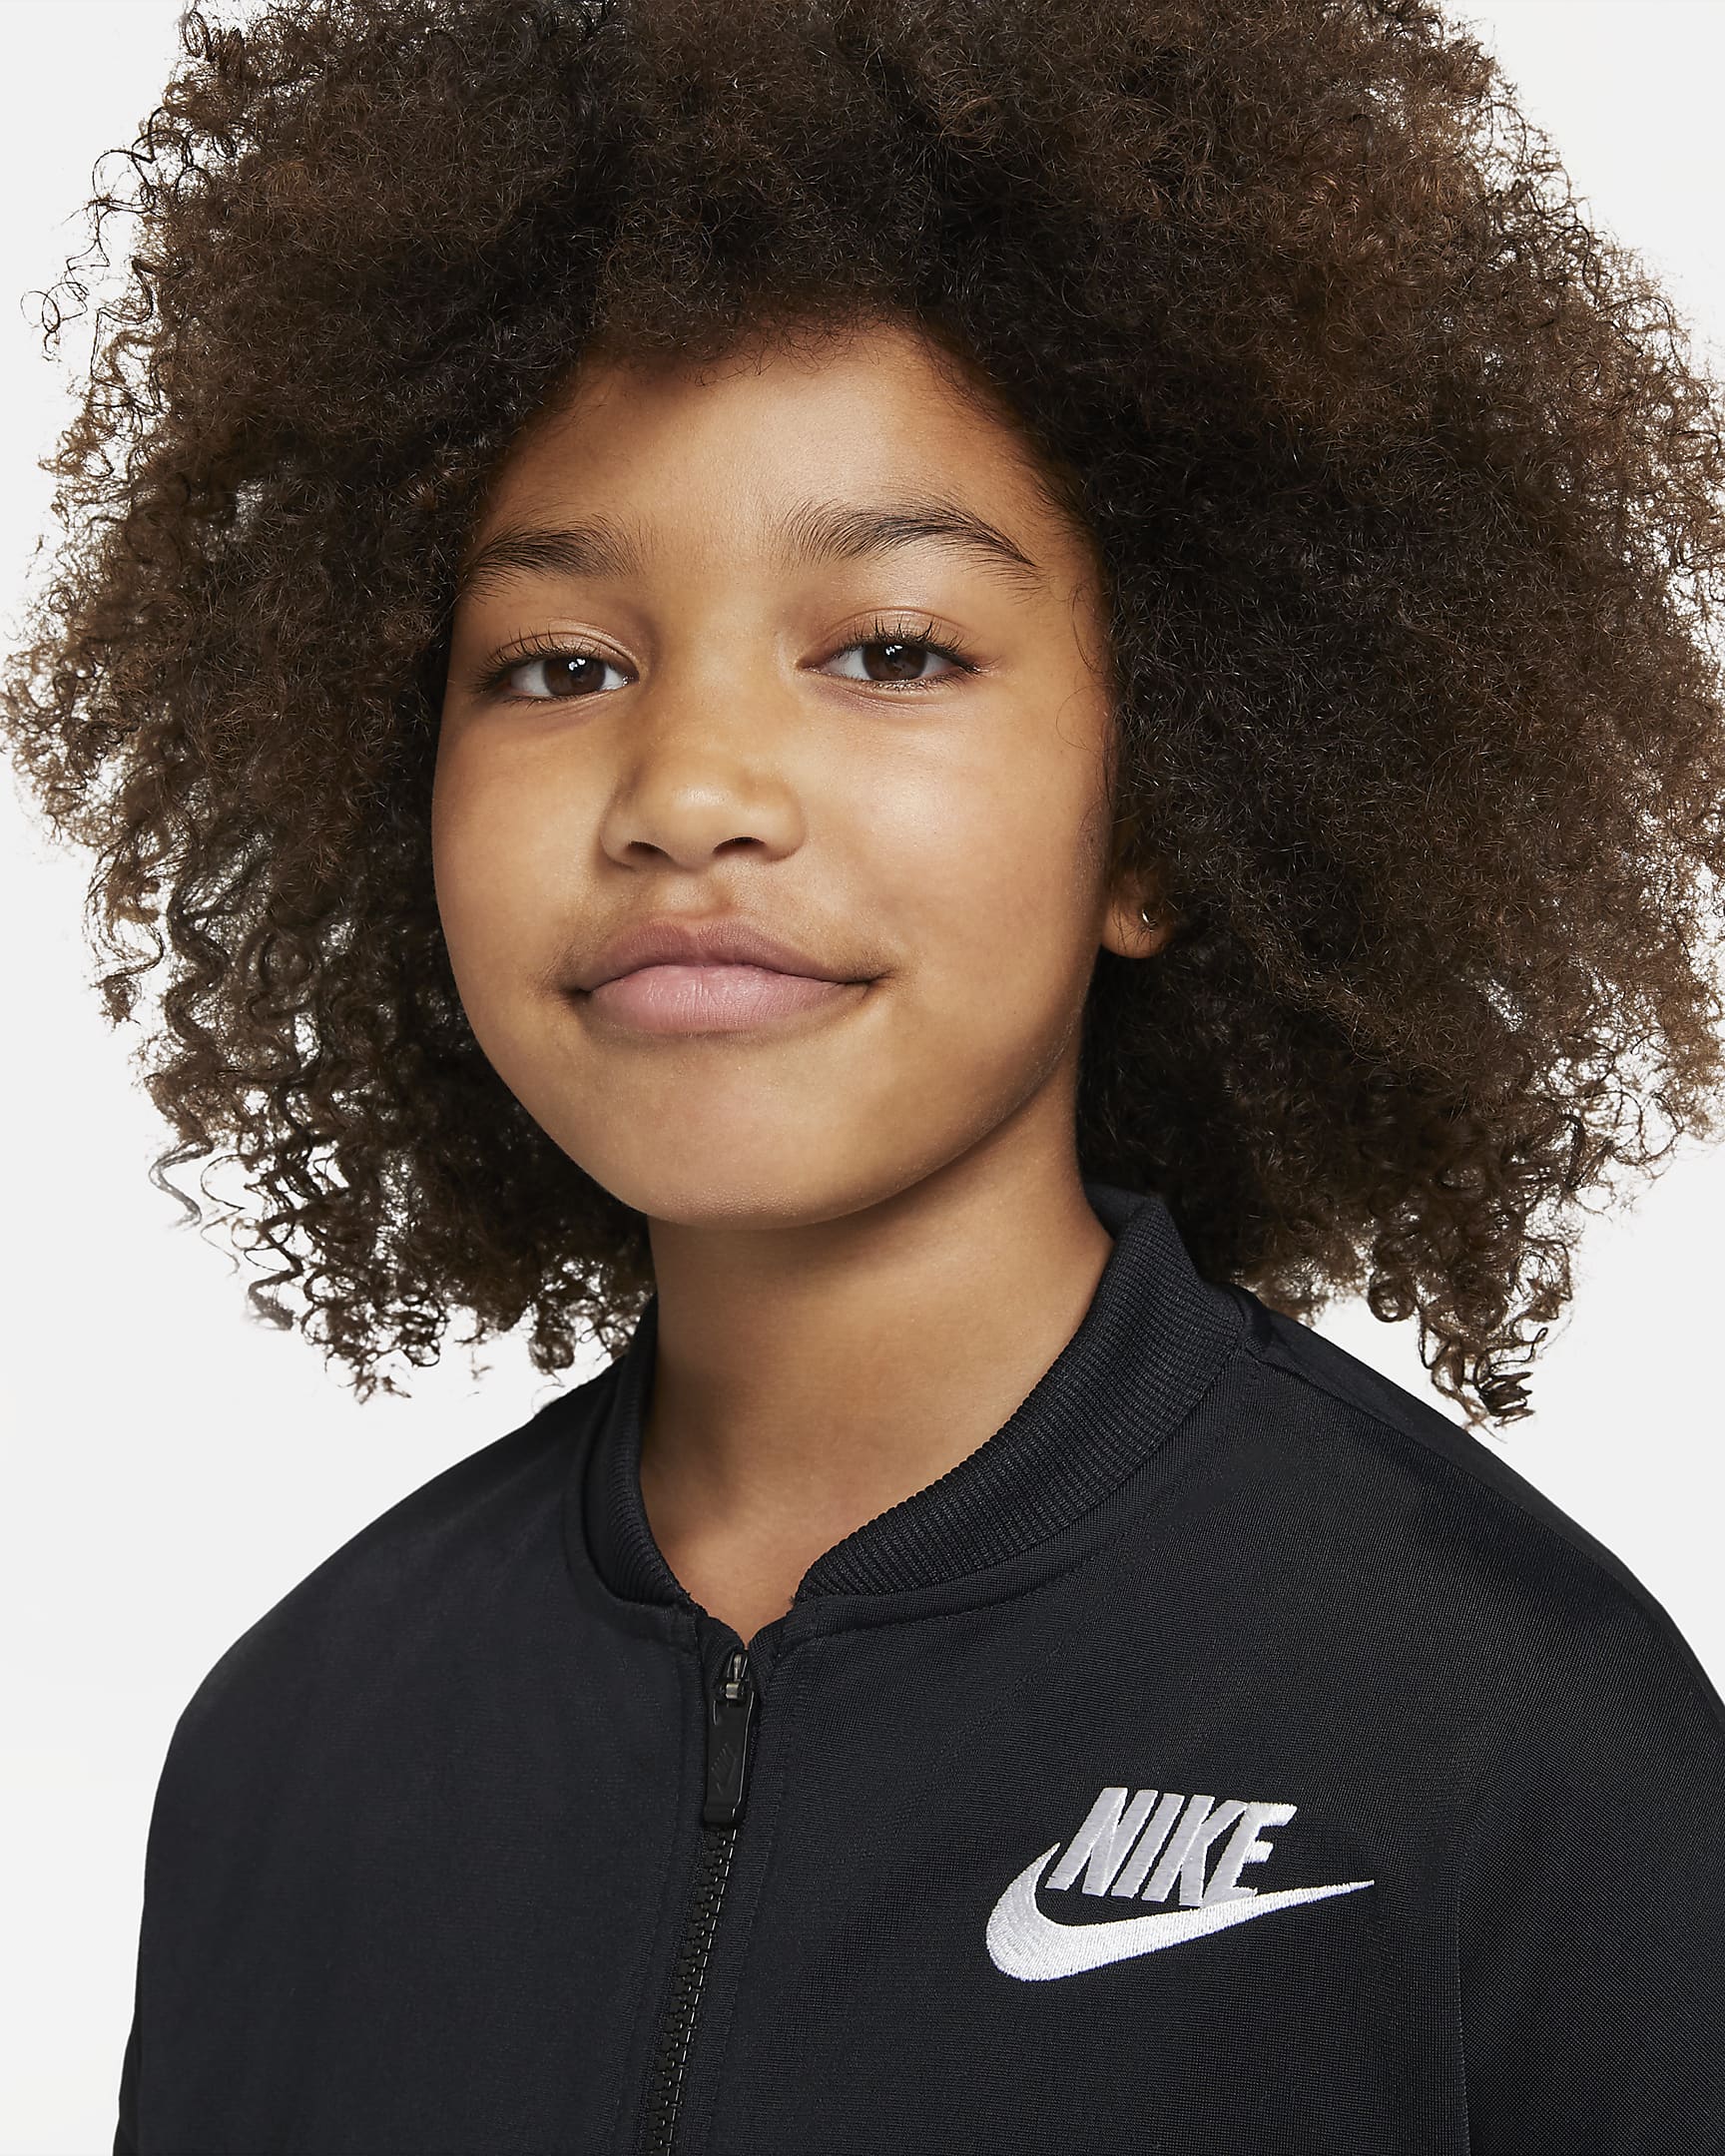 Nike Sportswear tréningruha nagyobb gyerekeknek - Fekete/Fehér/Fehér